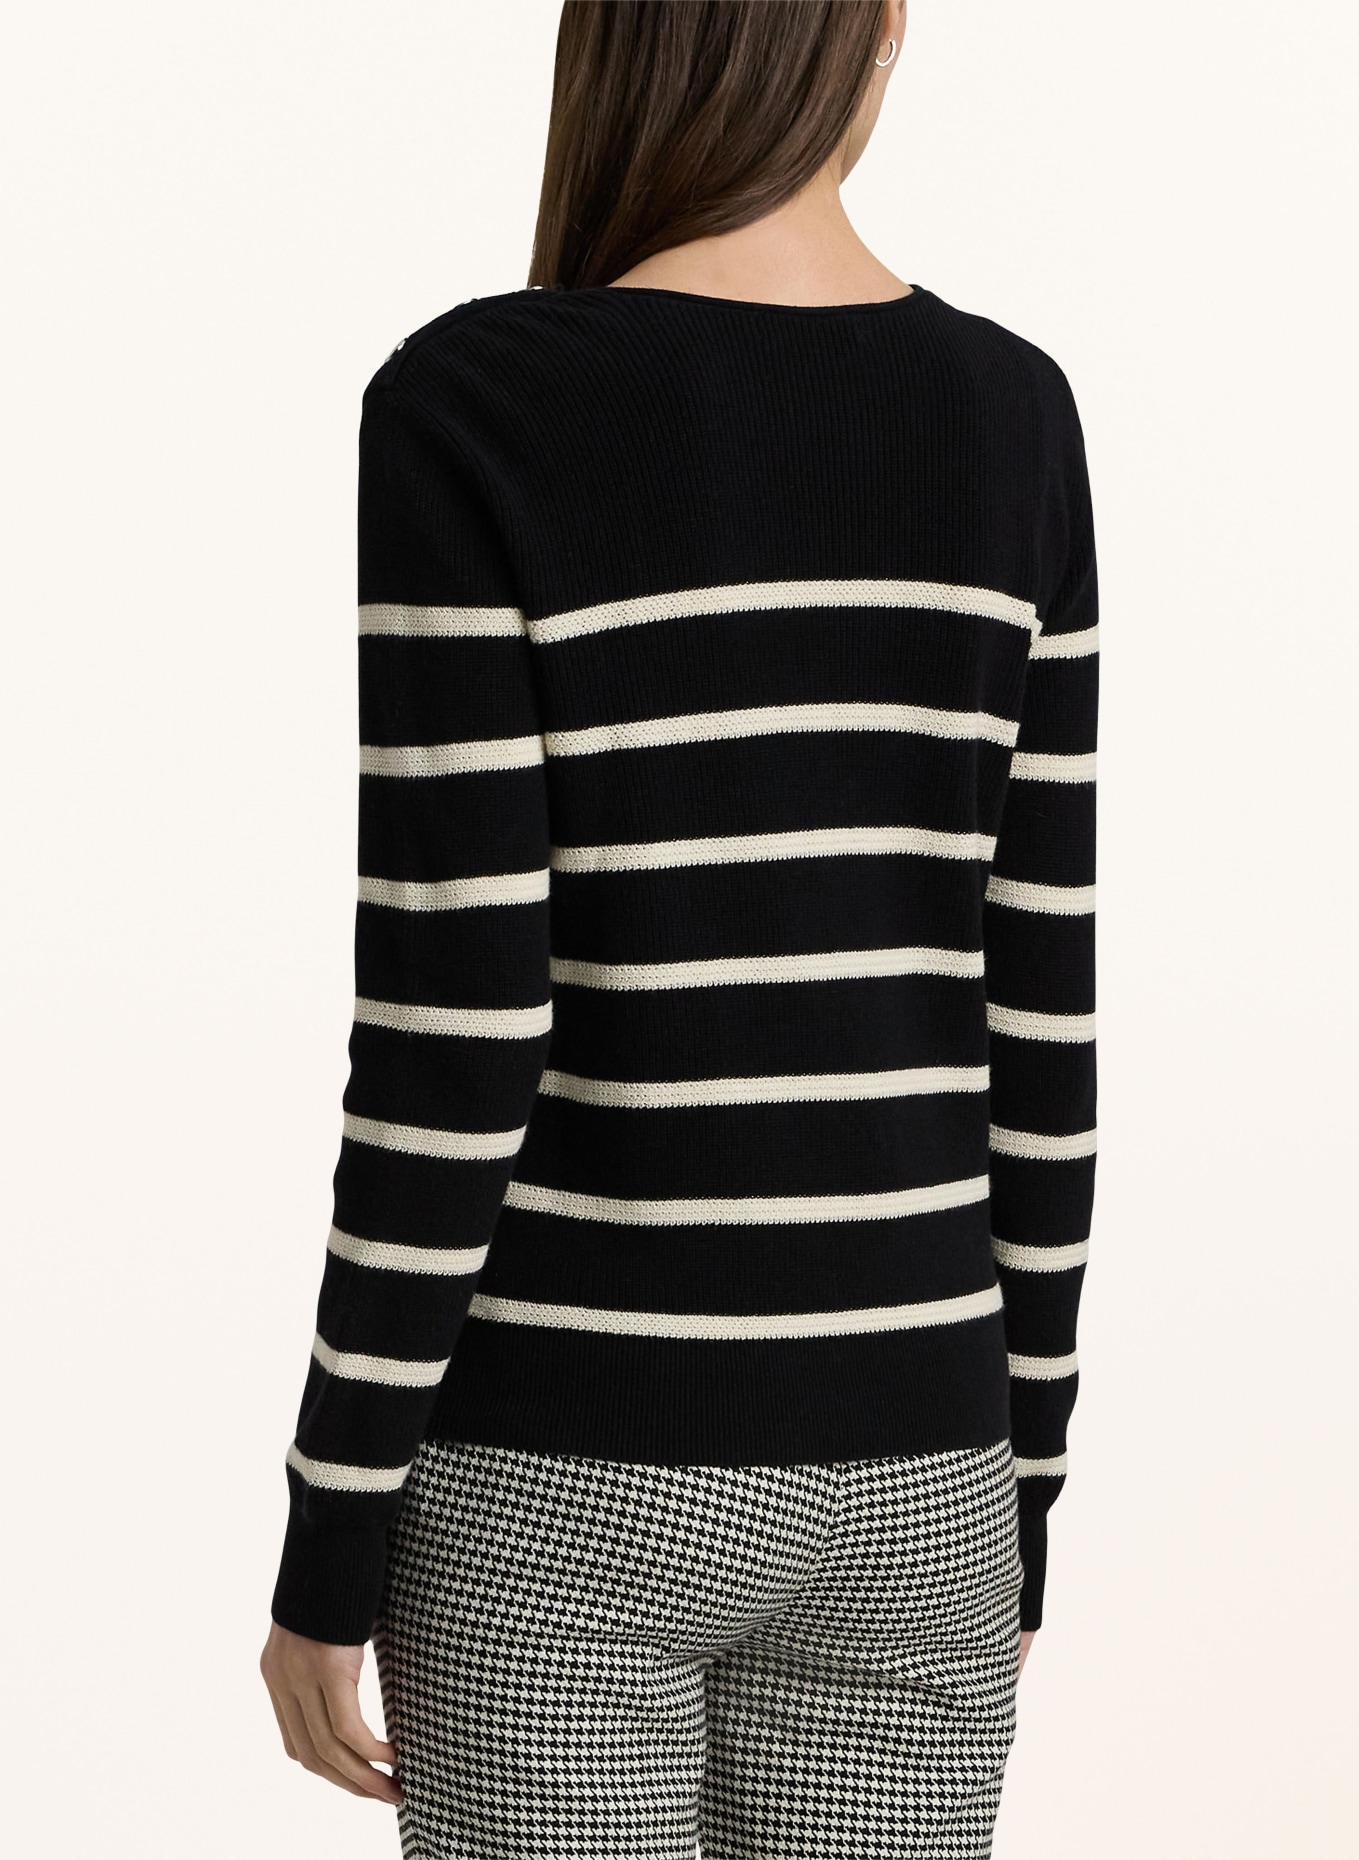 LAUREN RALPH LAUREN Sweater, Color: BLACK/ WHITE (Image 3)